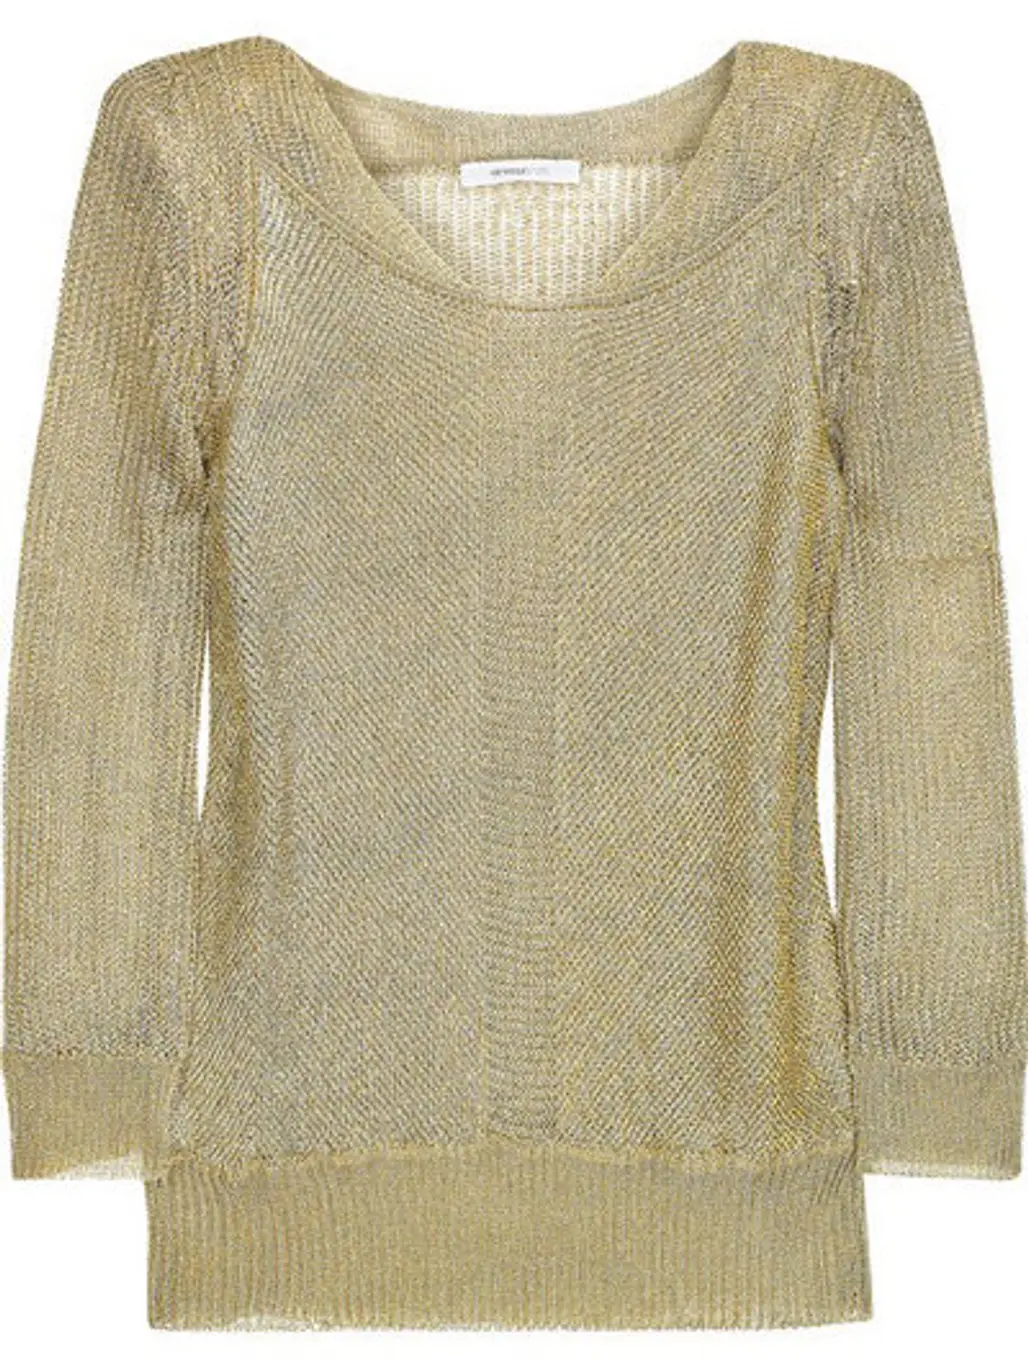 Vanessa Bruno Metallic Knitted Sweater